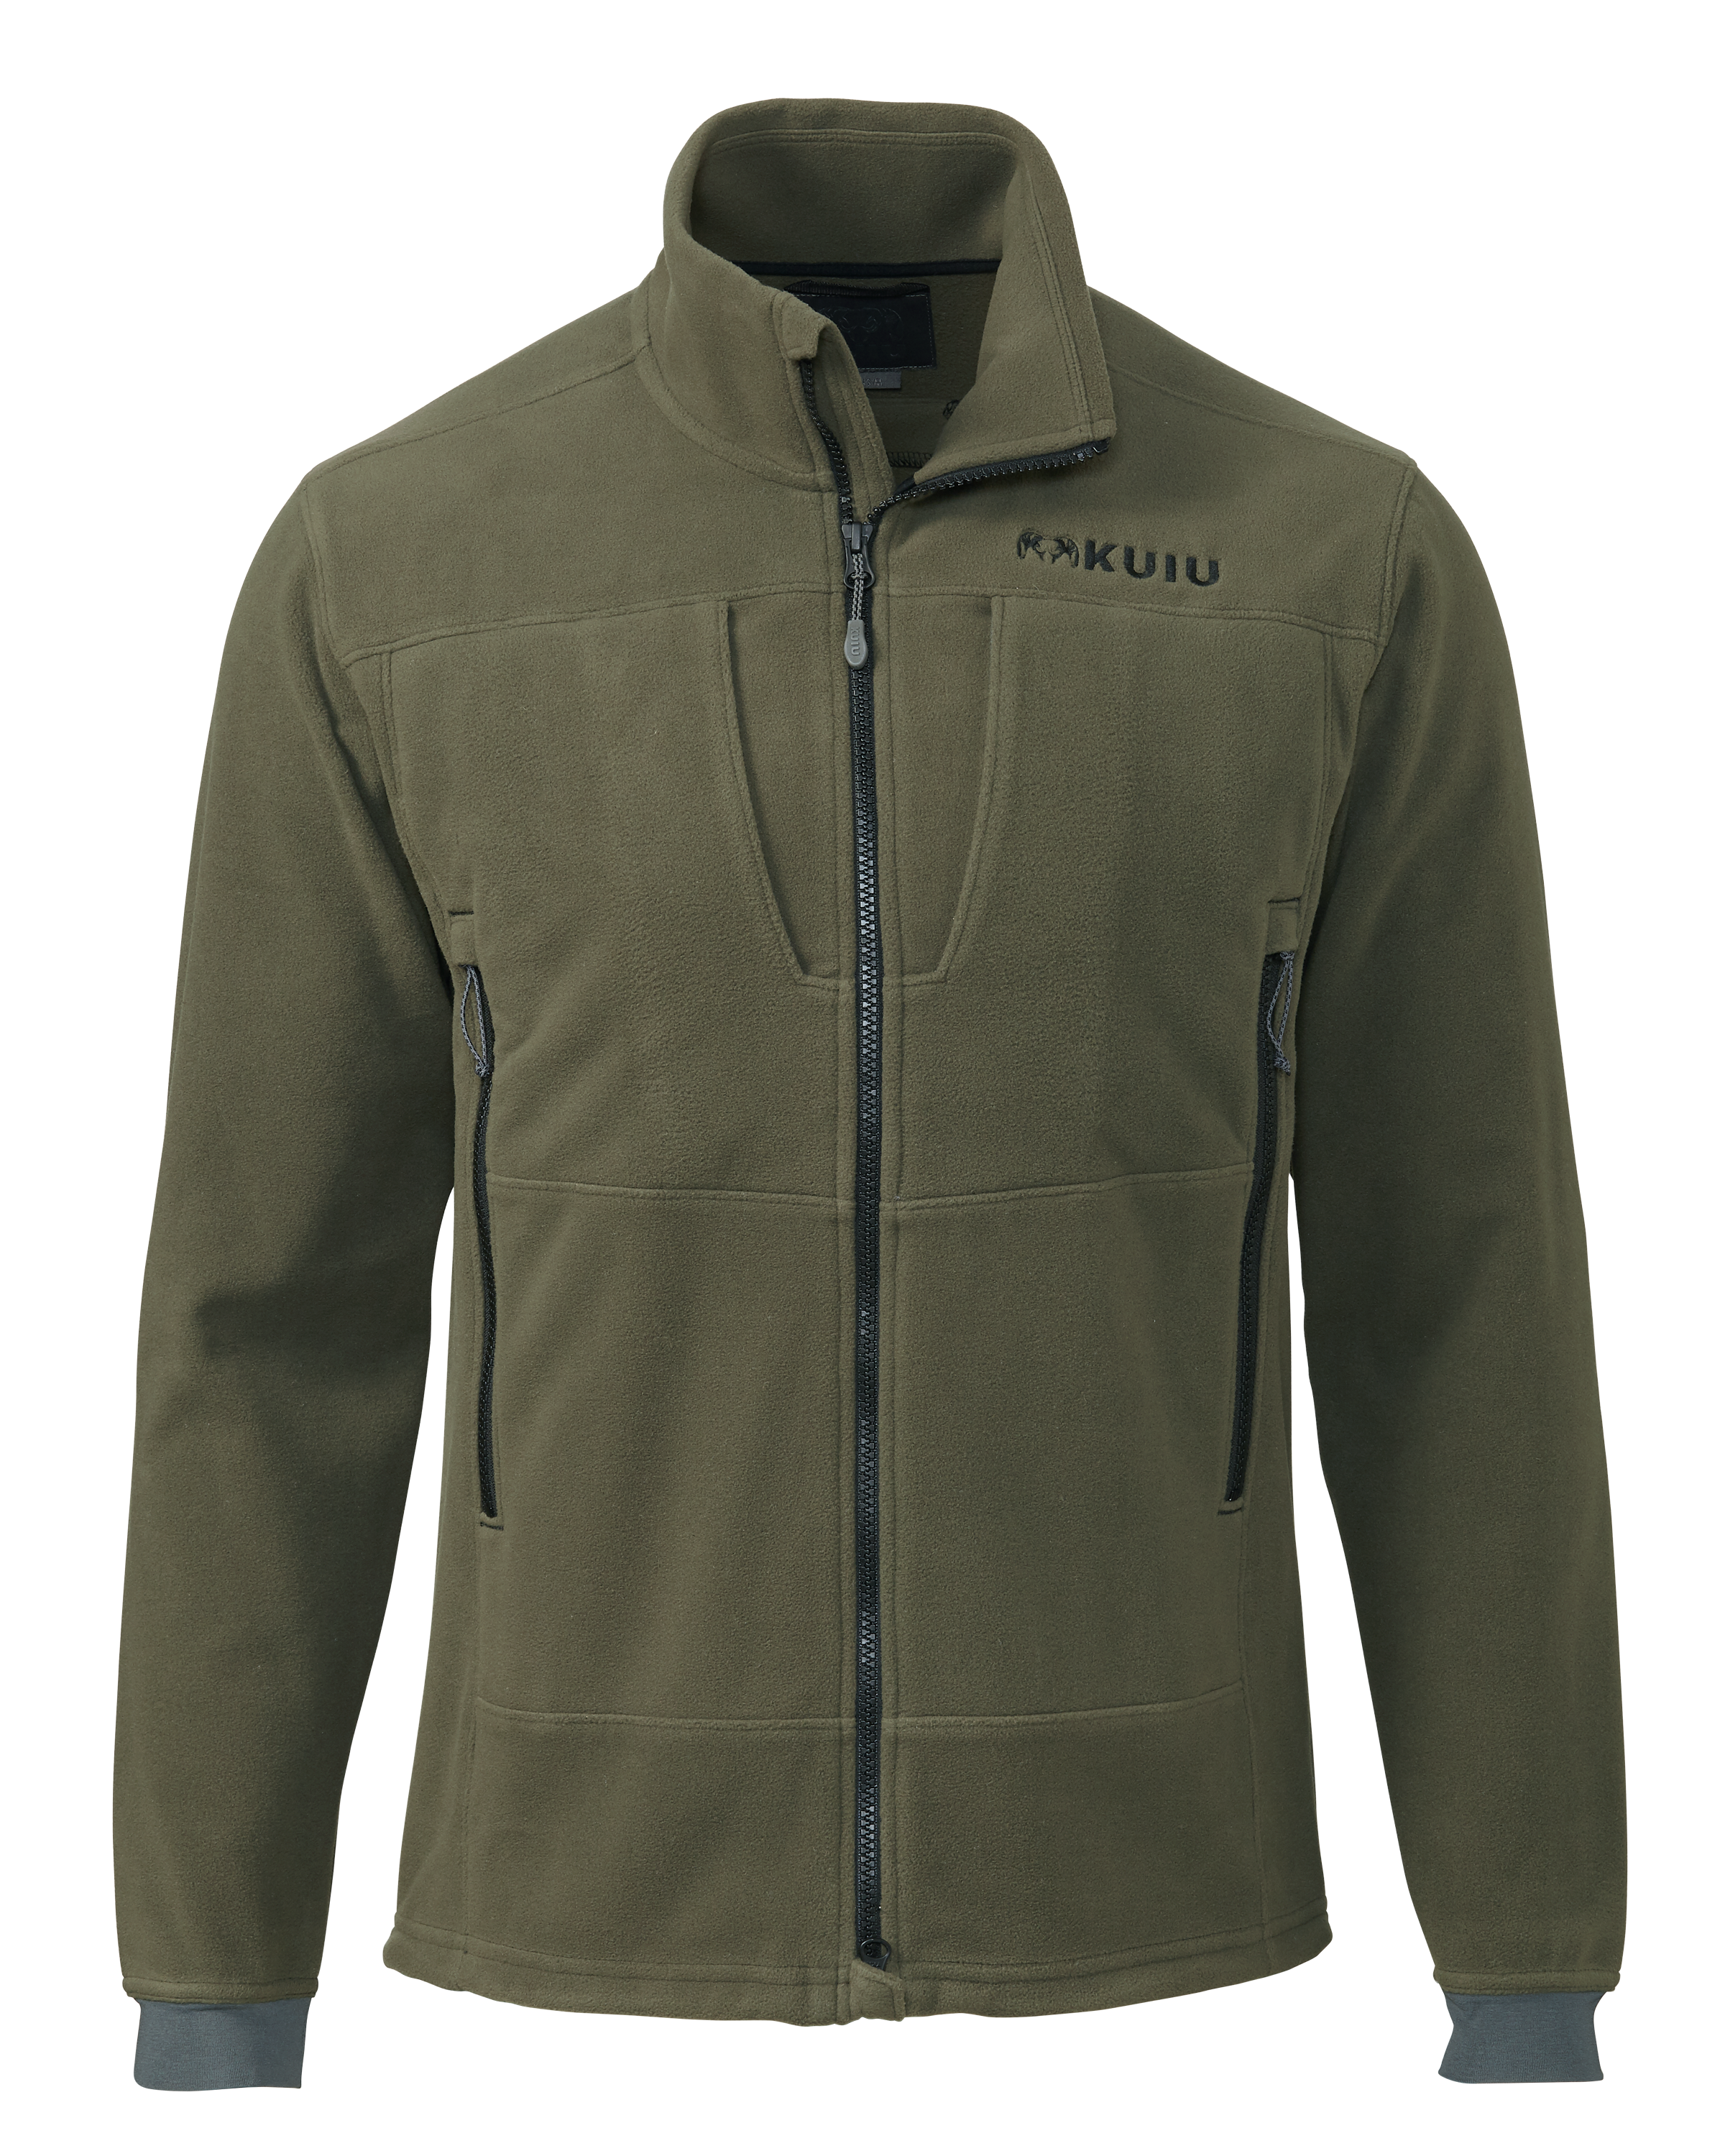 KUIU Wind Pro Fleece Full Zip Hunting Jacket in Olive | Size 2XL